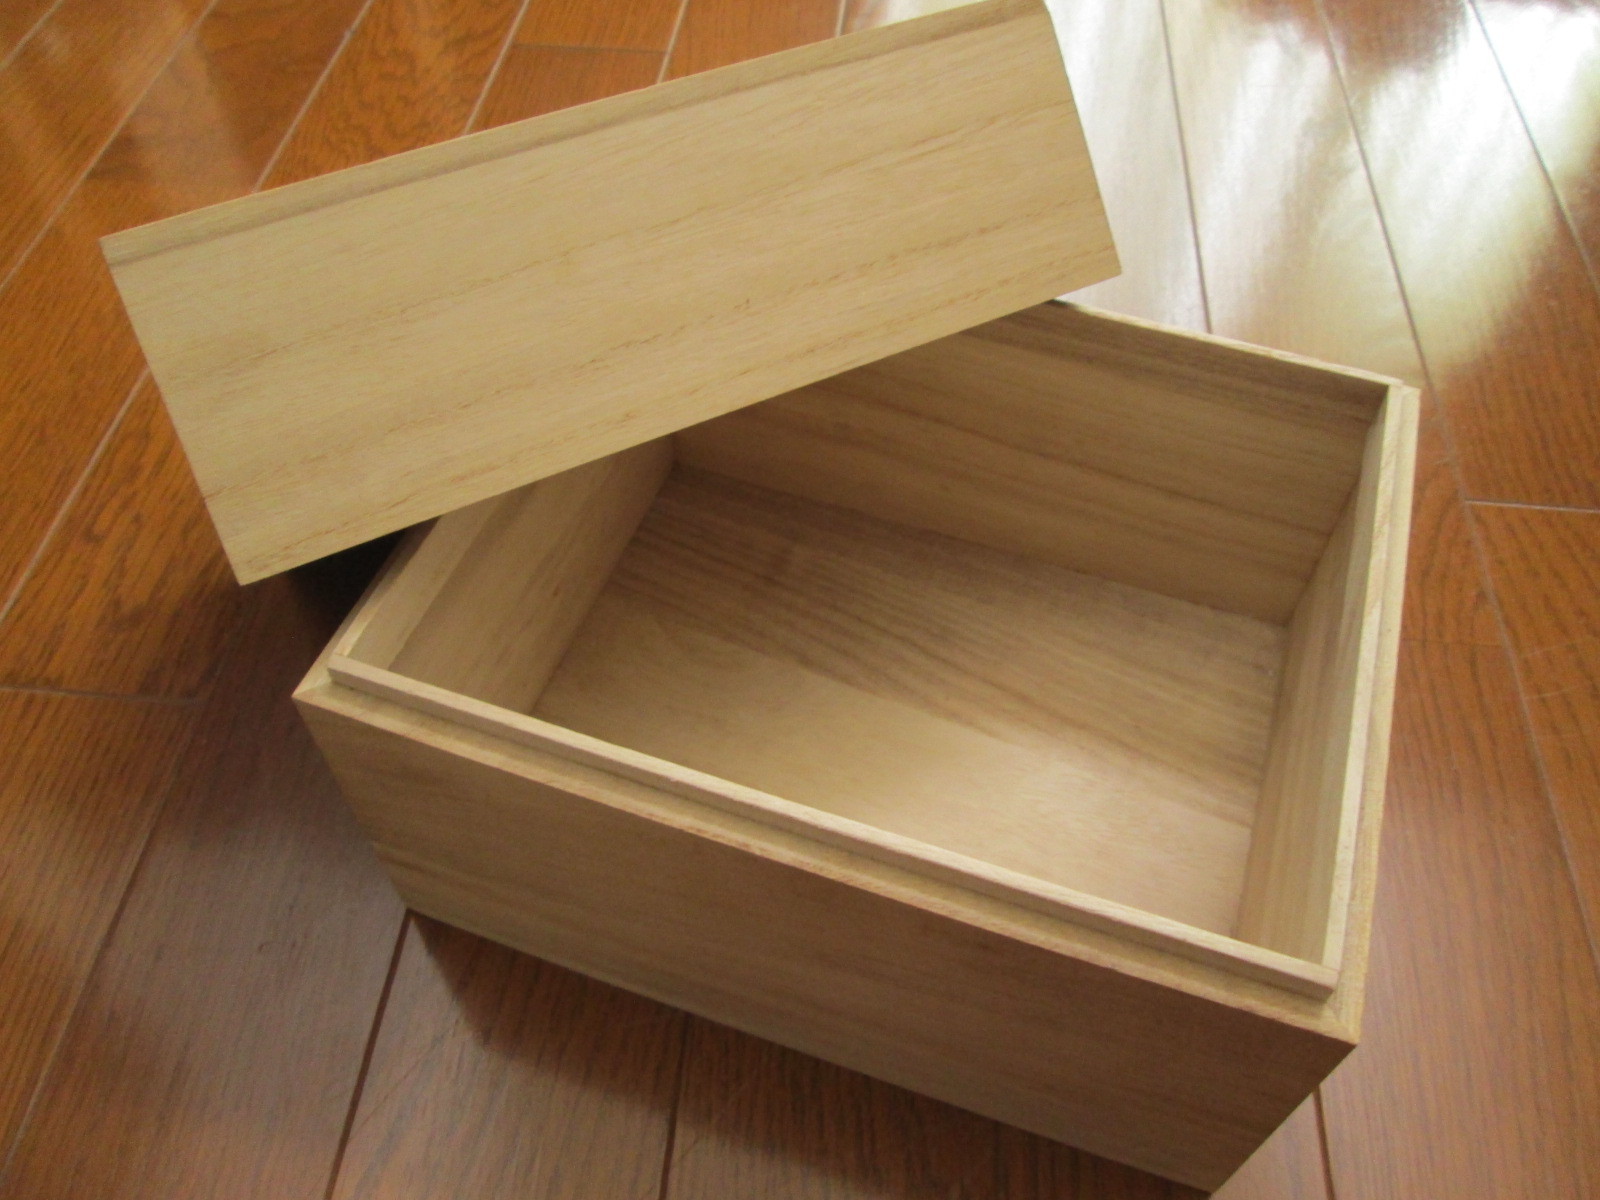 Diyで木箱作り 簡単手作りできる作り方や設計図を解説 蓋付きも簡単 暮らし の